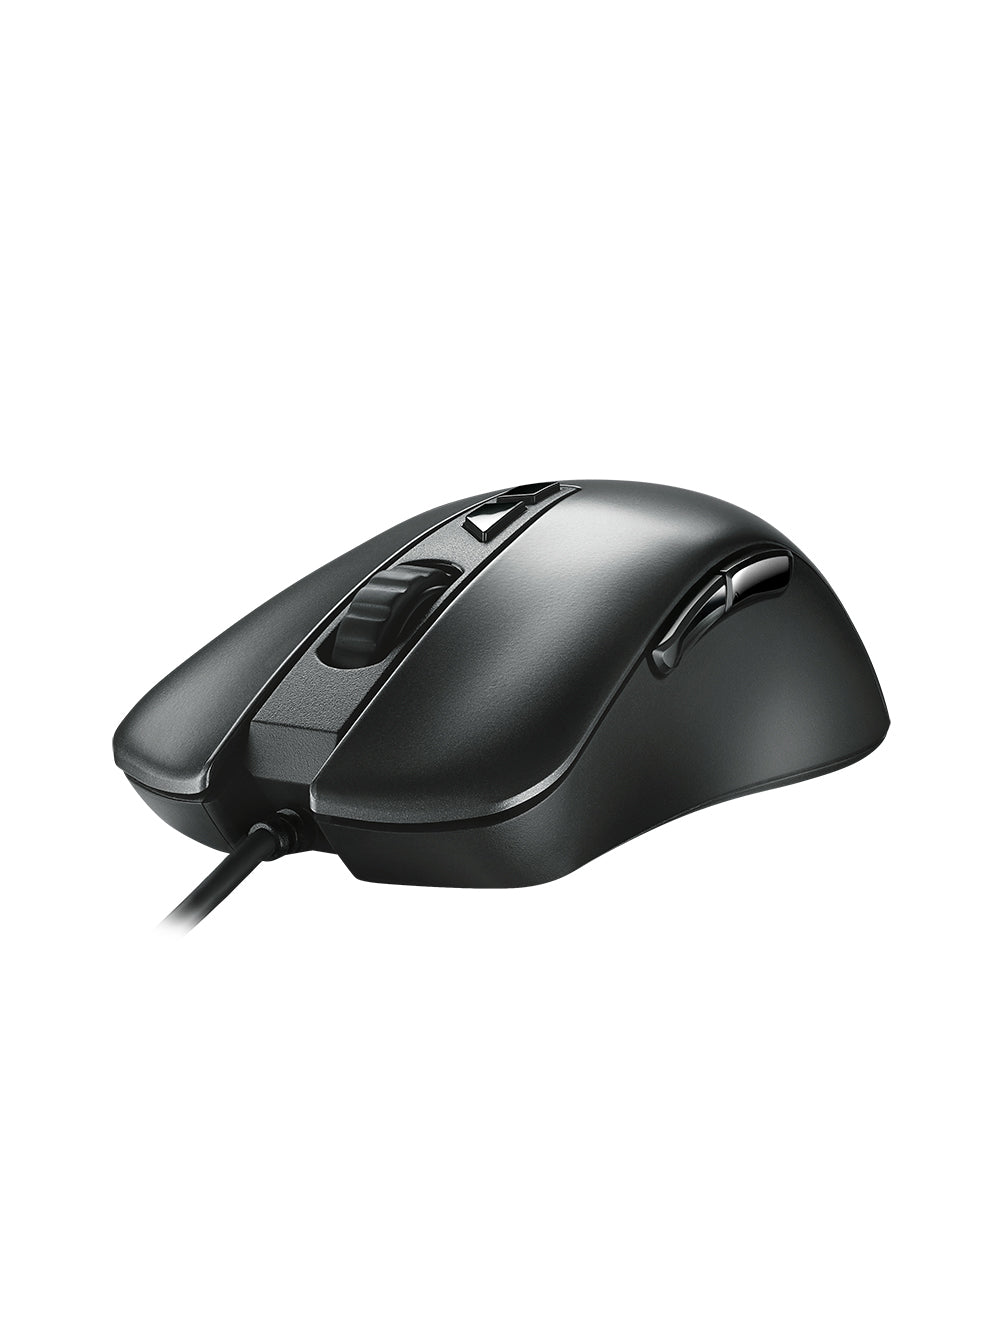 ASUS TUF M3 Gaming Mouse